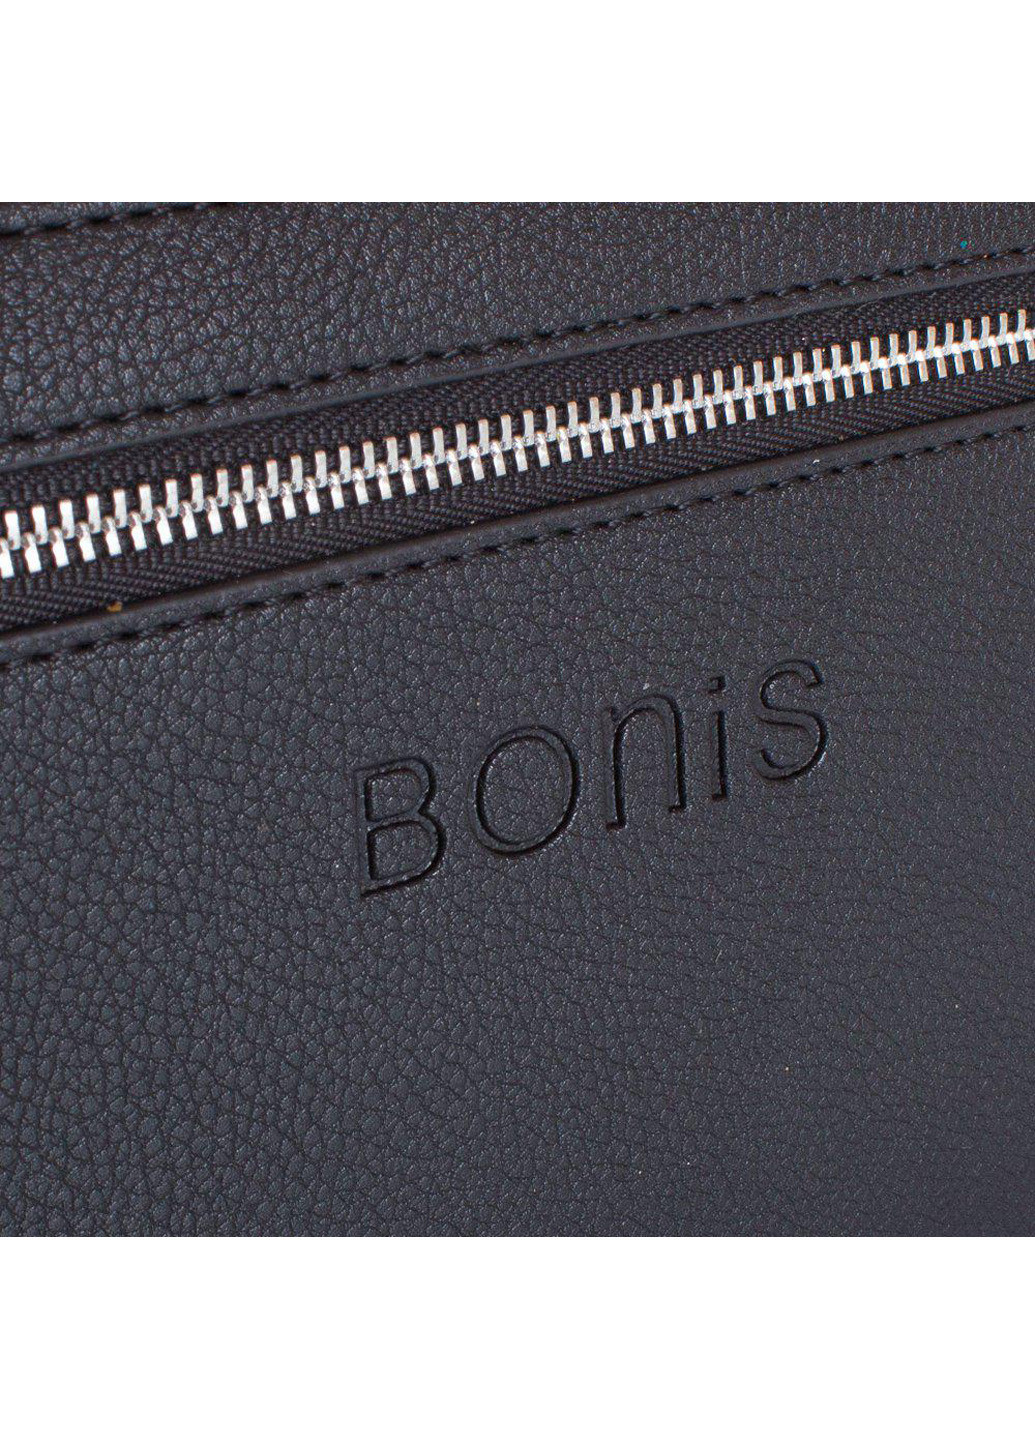 Чоловіча борсетки-гаманець 21х12х2,5 см Bonis (195538456)